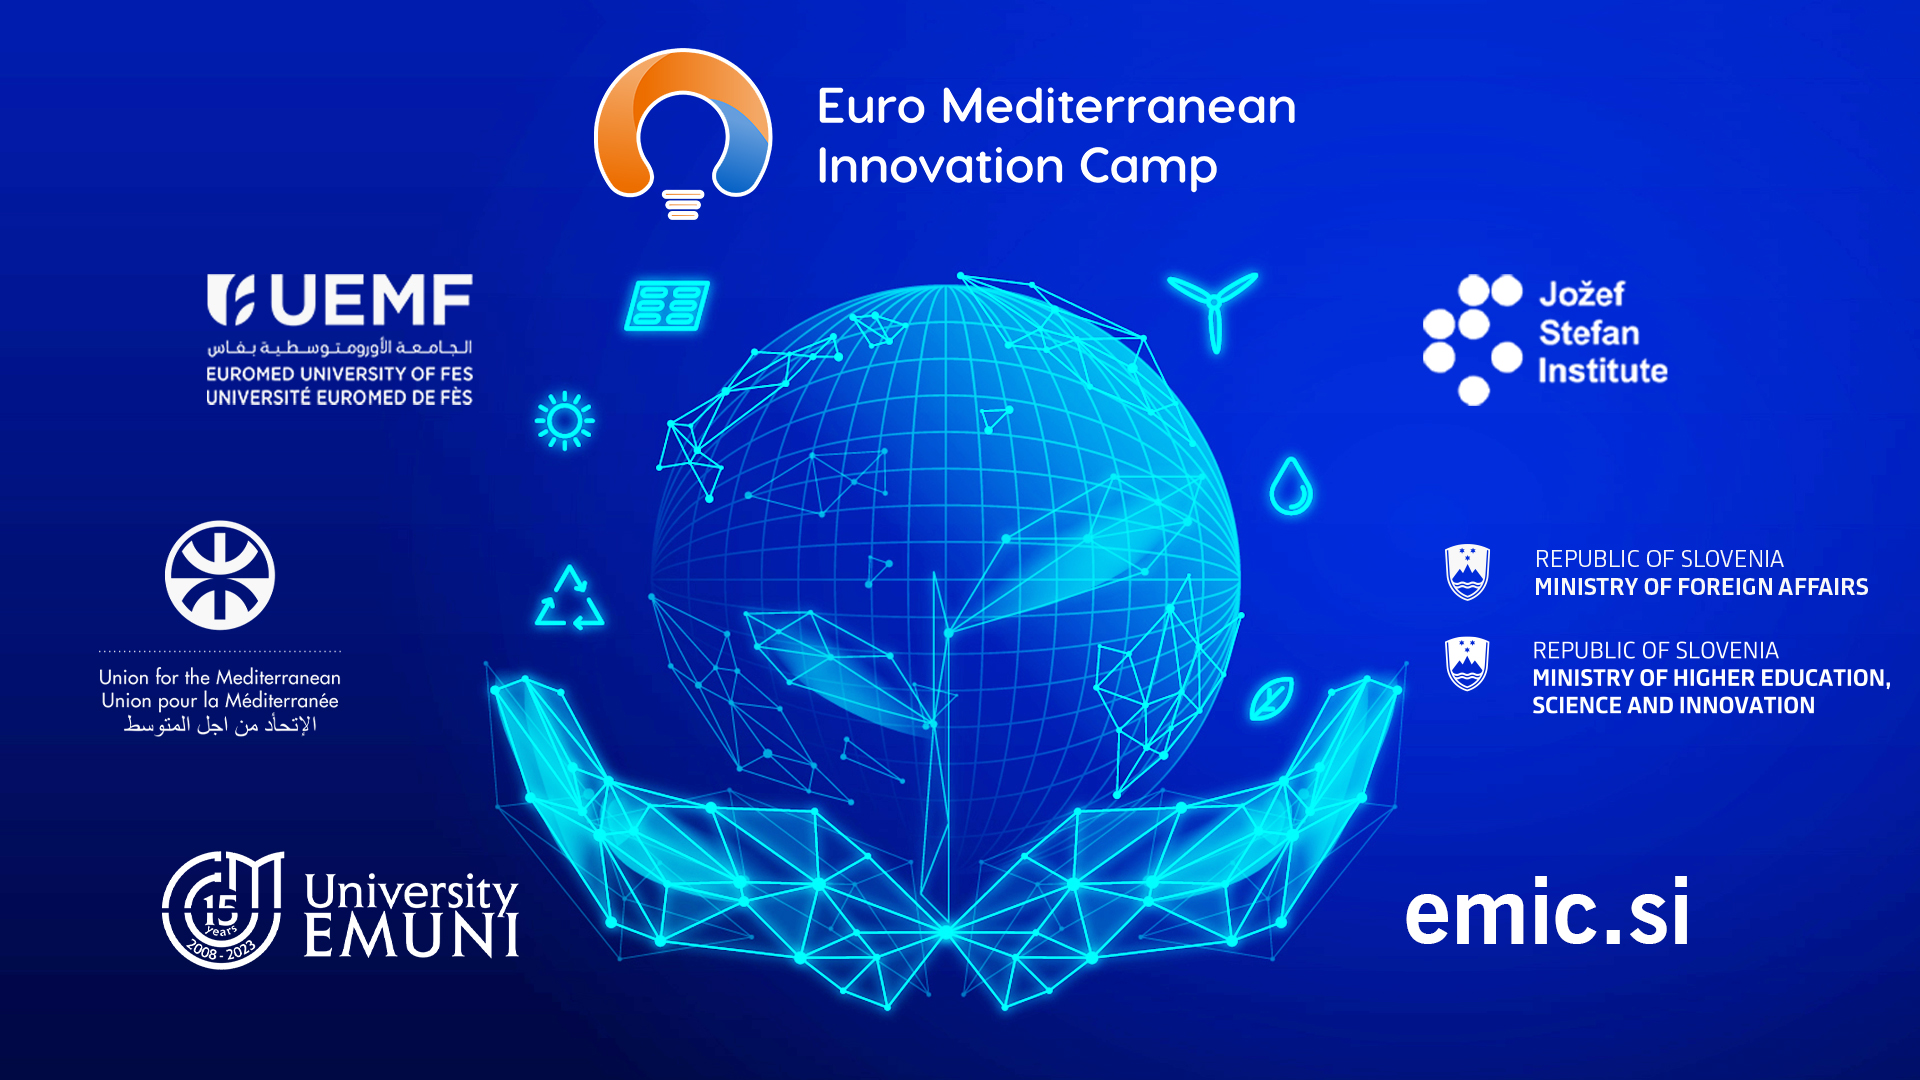 [Convocatoria de solicitudes] Segunda edición del Bootcamp Euromediterráneo de Innovación de la Universidad Euromediterránea de Fez (UEMF), la Universidad Euromediterránea (EMUNI) y otros socios